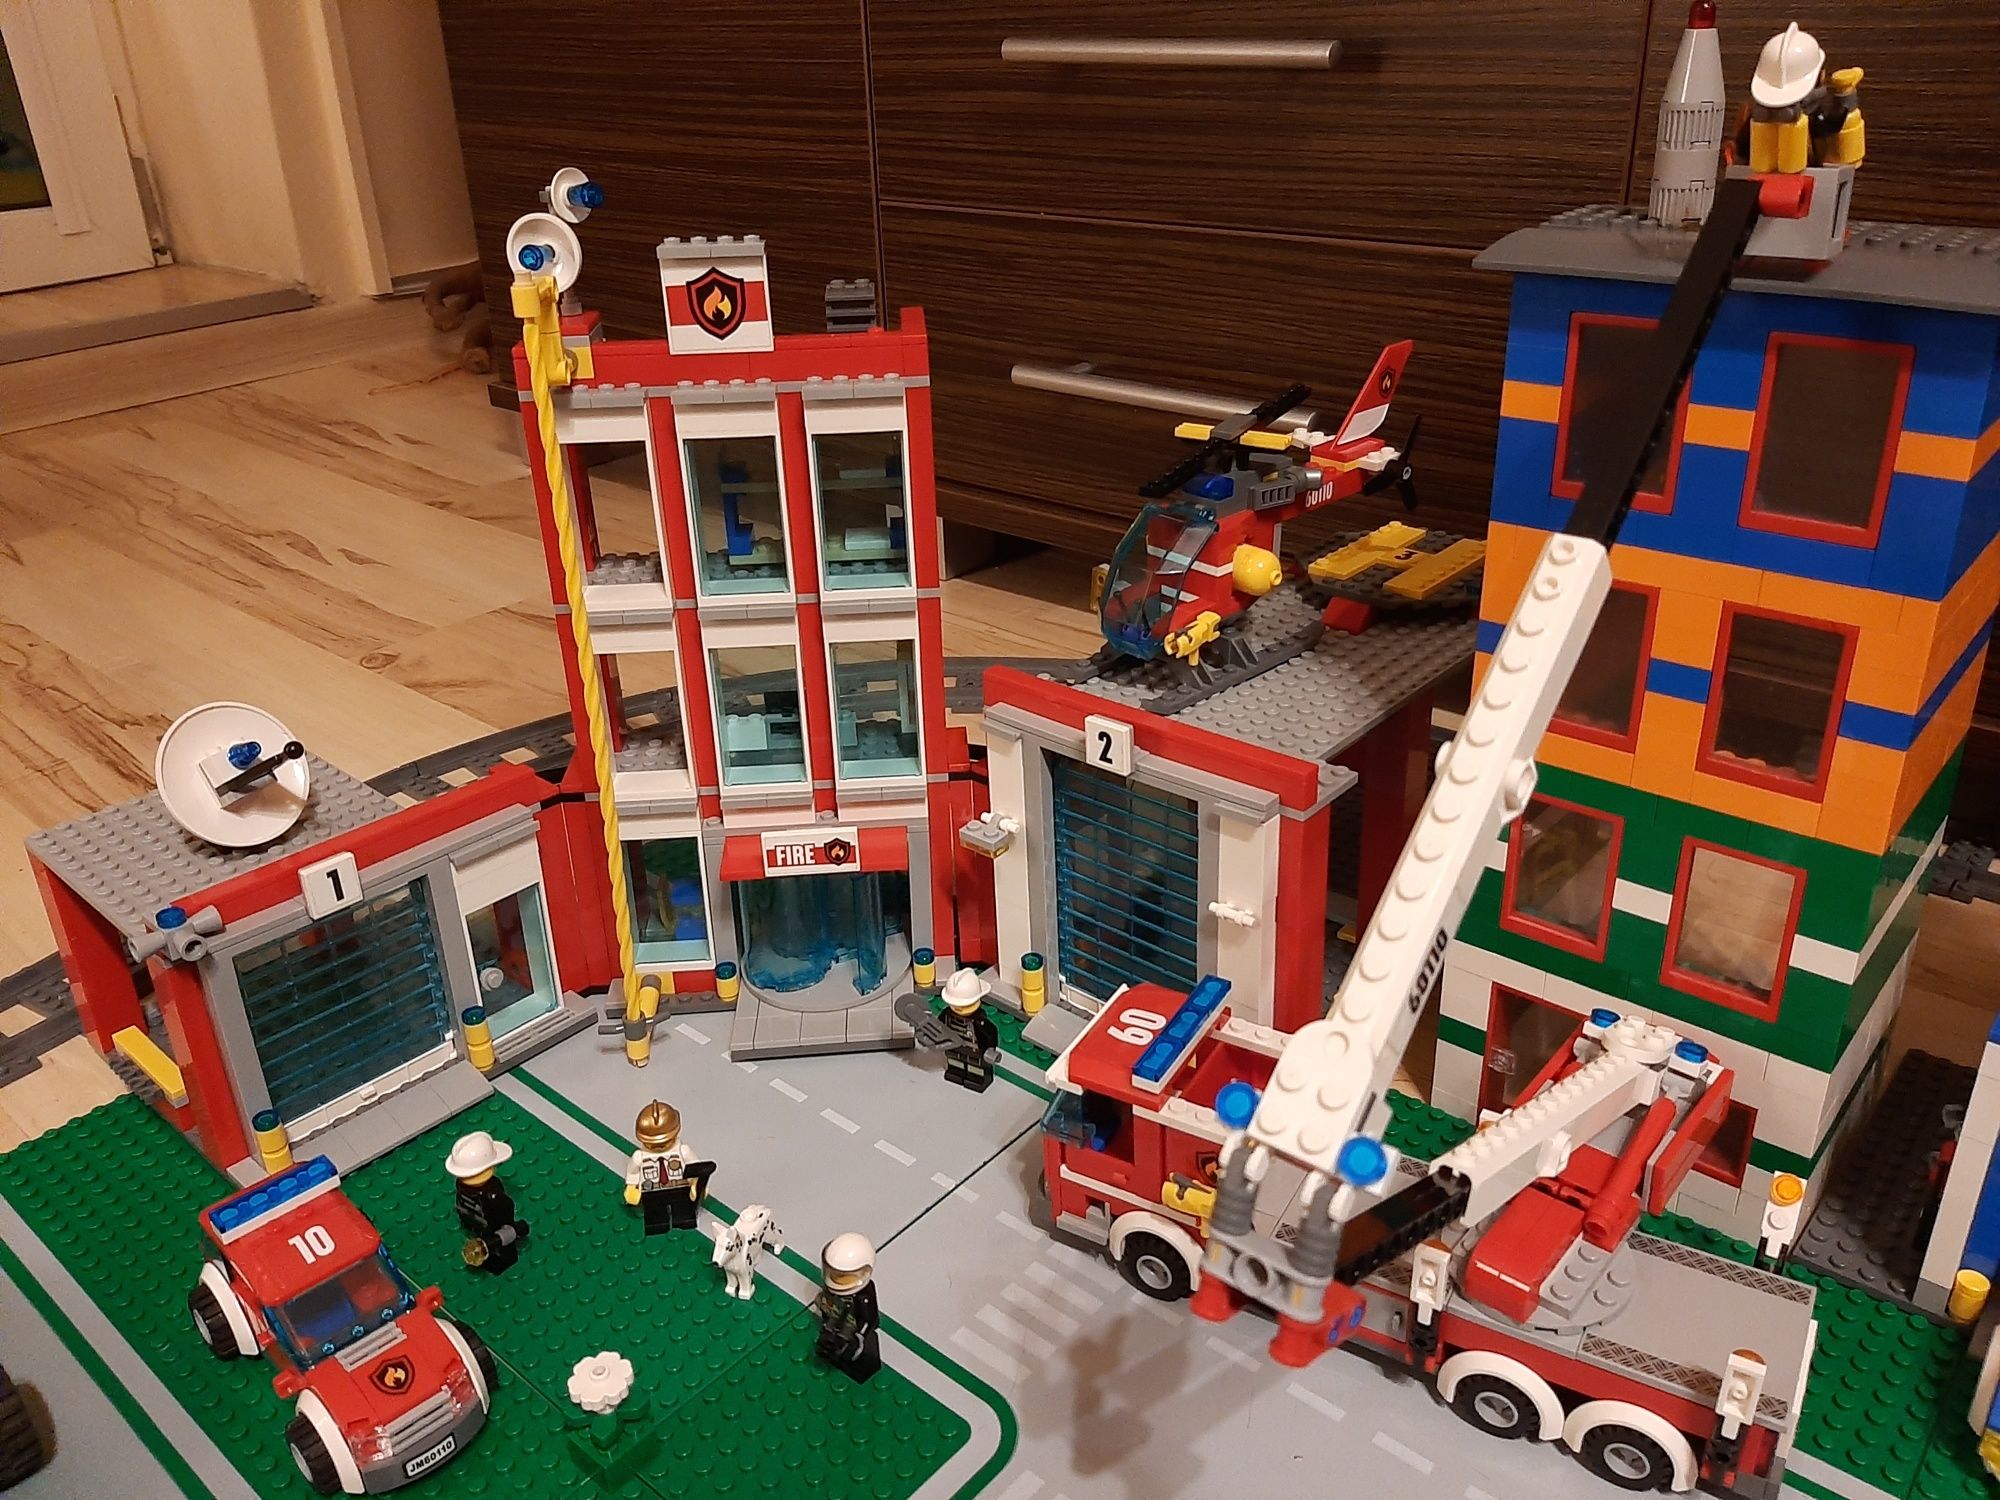 Lego City 60110 - jak nowa, najlepsza remiza straż